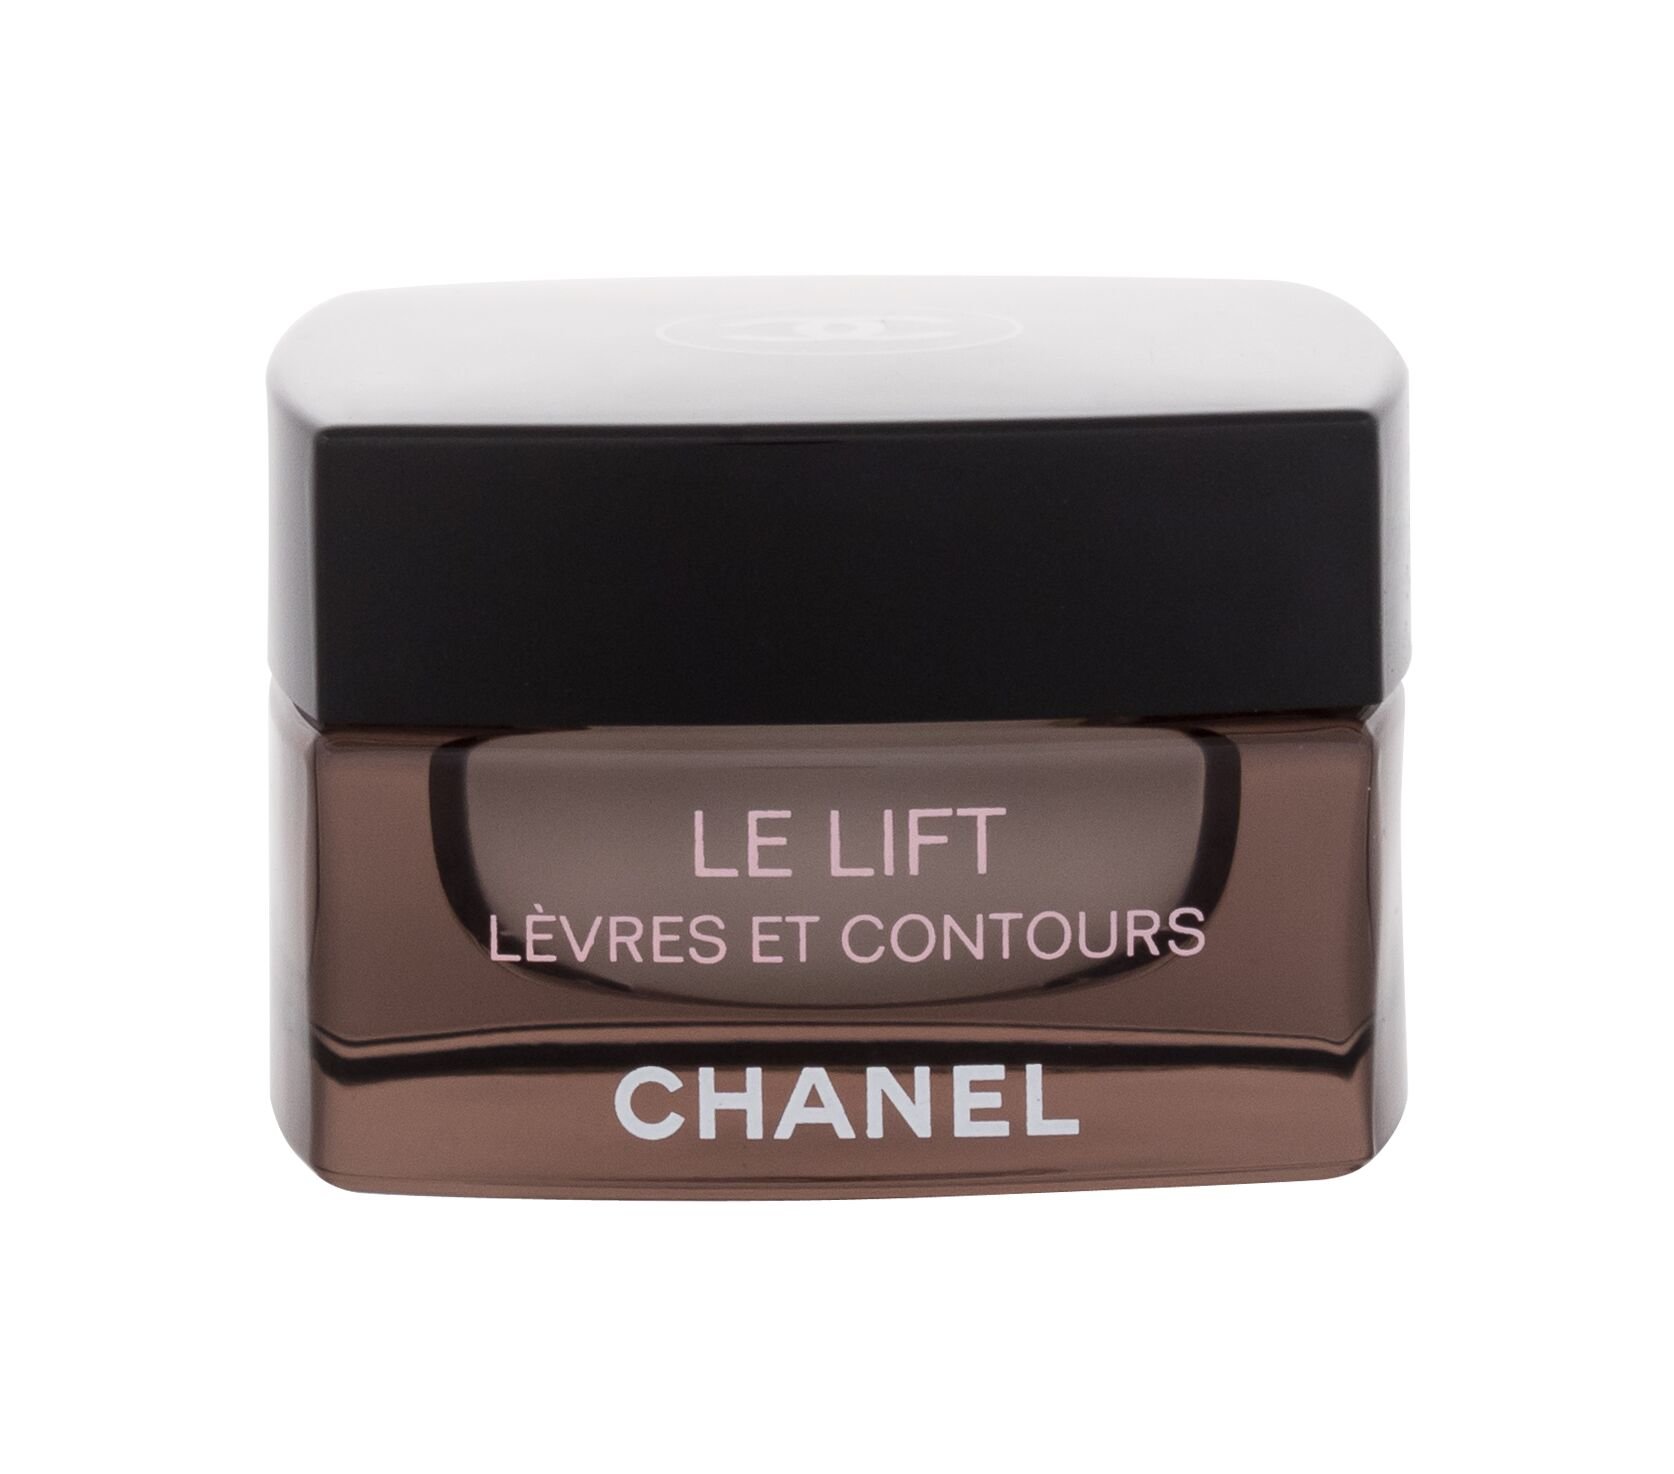 Chanel Le Lift Levres Et Contours 15g lūpų kremas